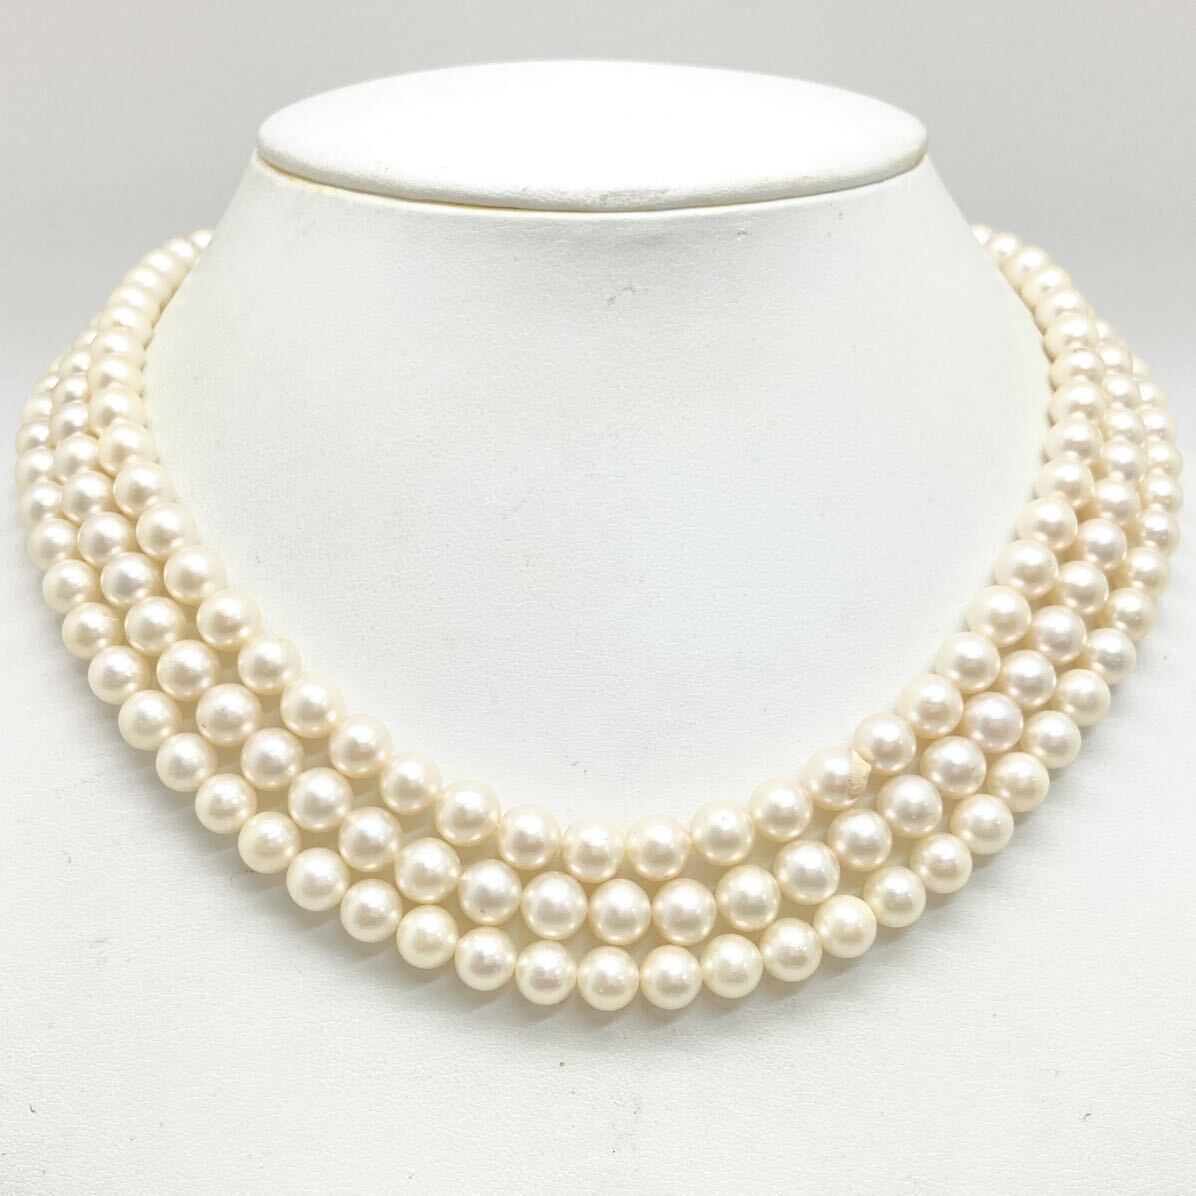 「アコヤ本真珠ネックレスおまとめ」m約82g 約6-7mmパール pearl necklace accessory jewelry silver EA5_画像1